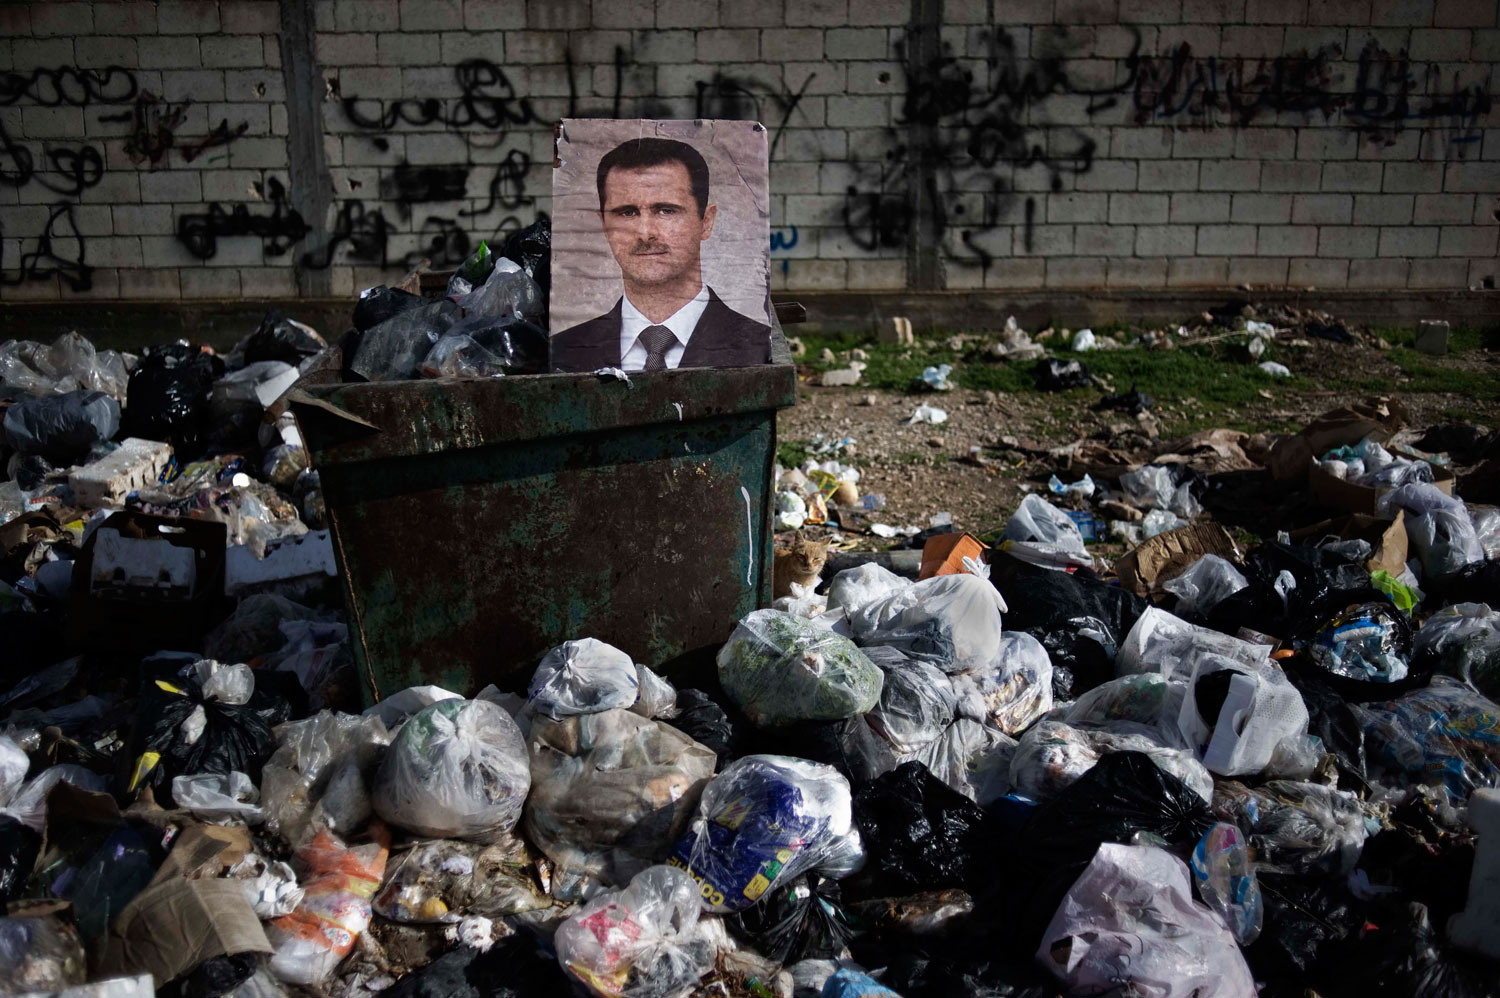 Feb. 10, 2012. A portrait of Syrian President Bashar al-Assad among the trash in al-Qsair.